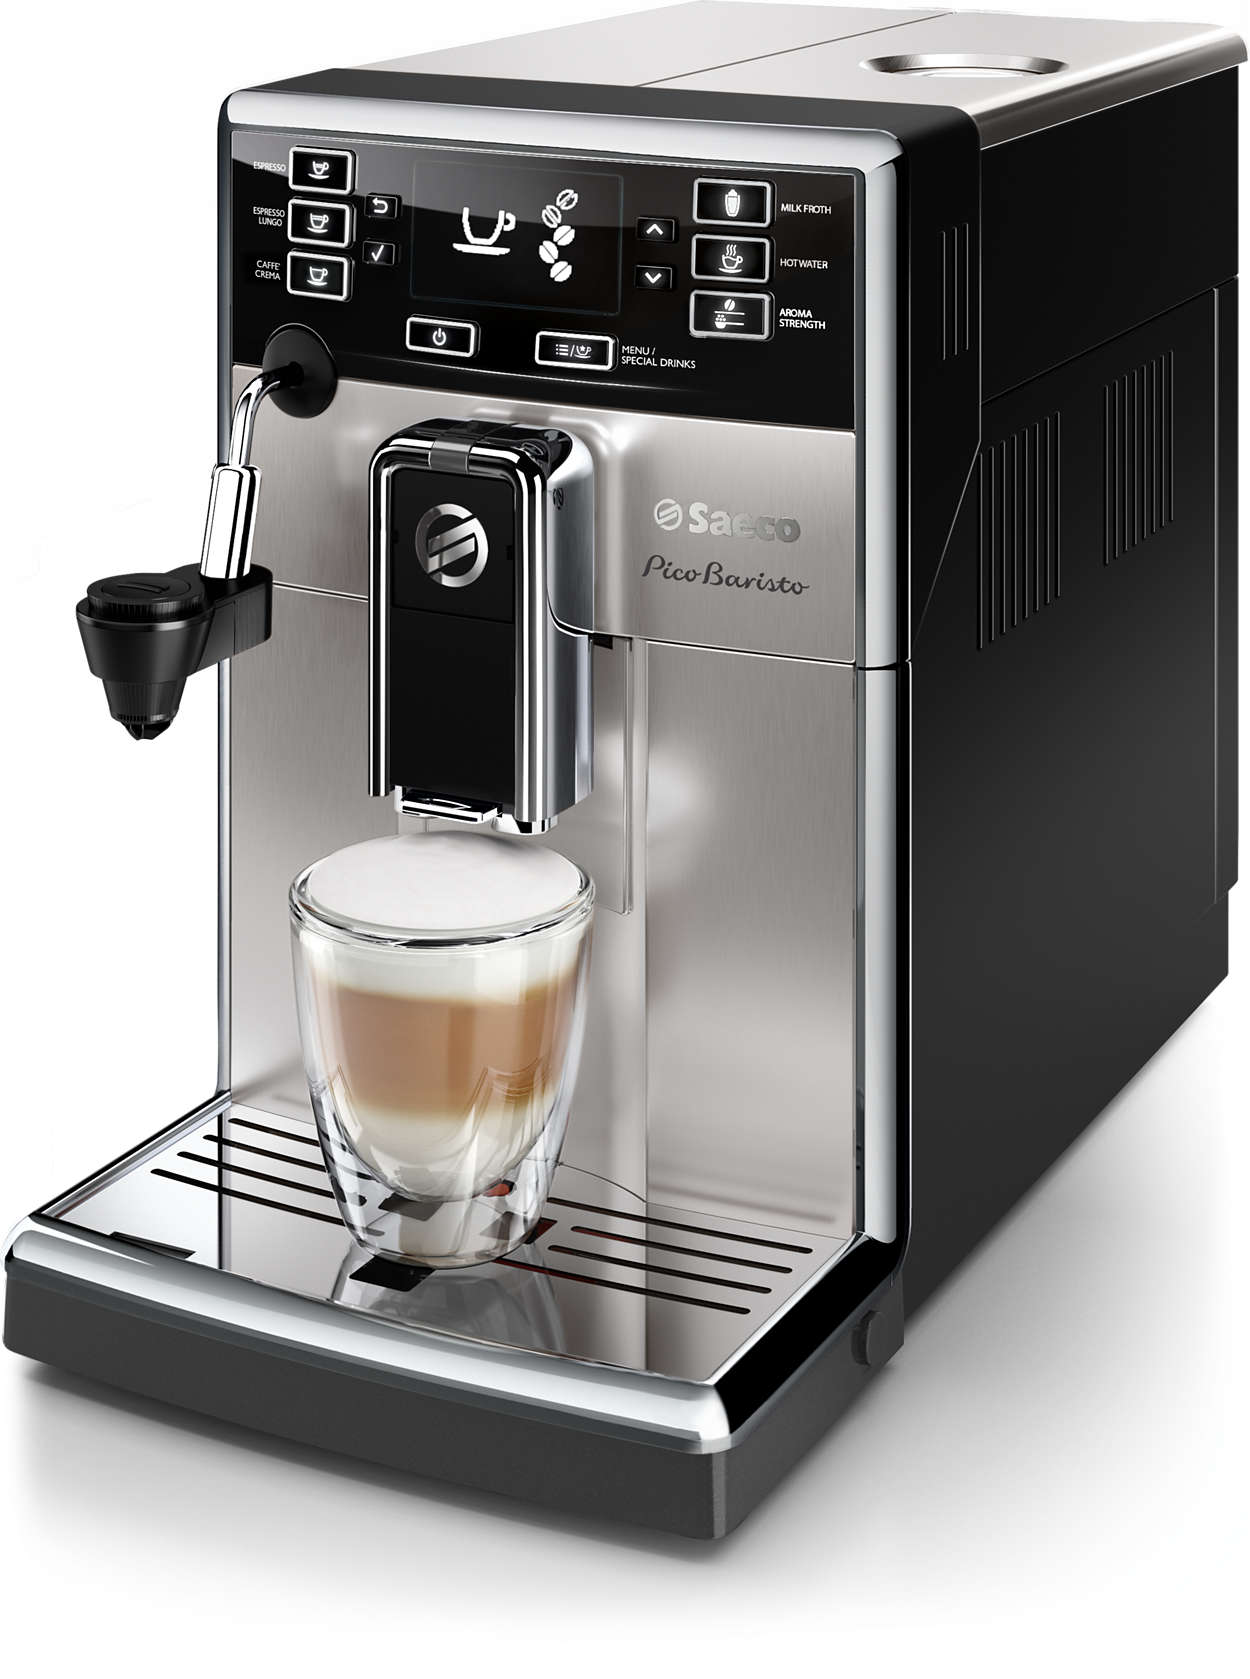 PicoBaristo Superautomatic espresso machine HD8924/47 Saeco